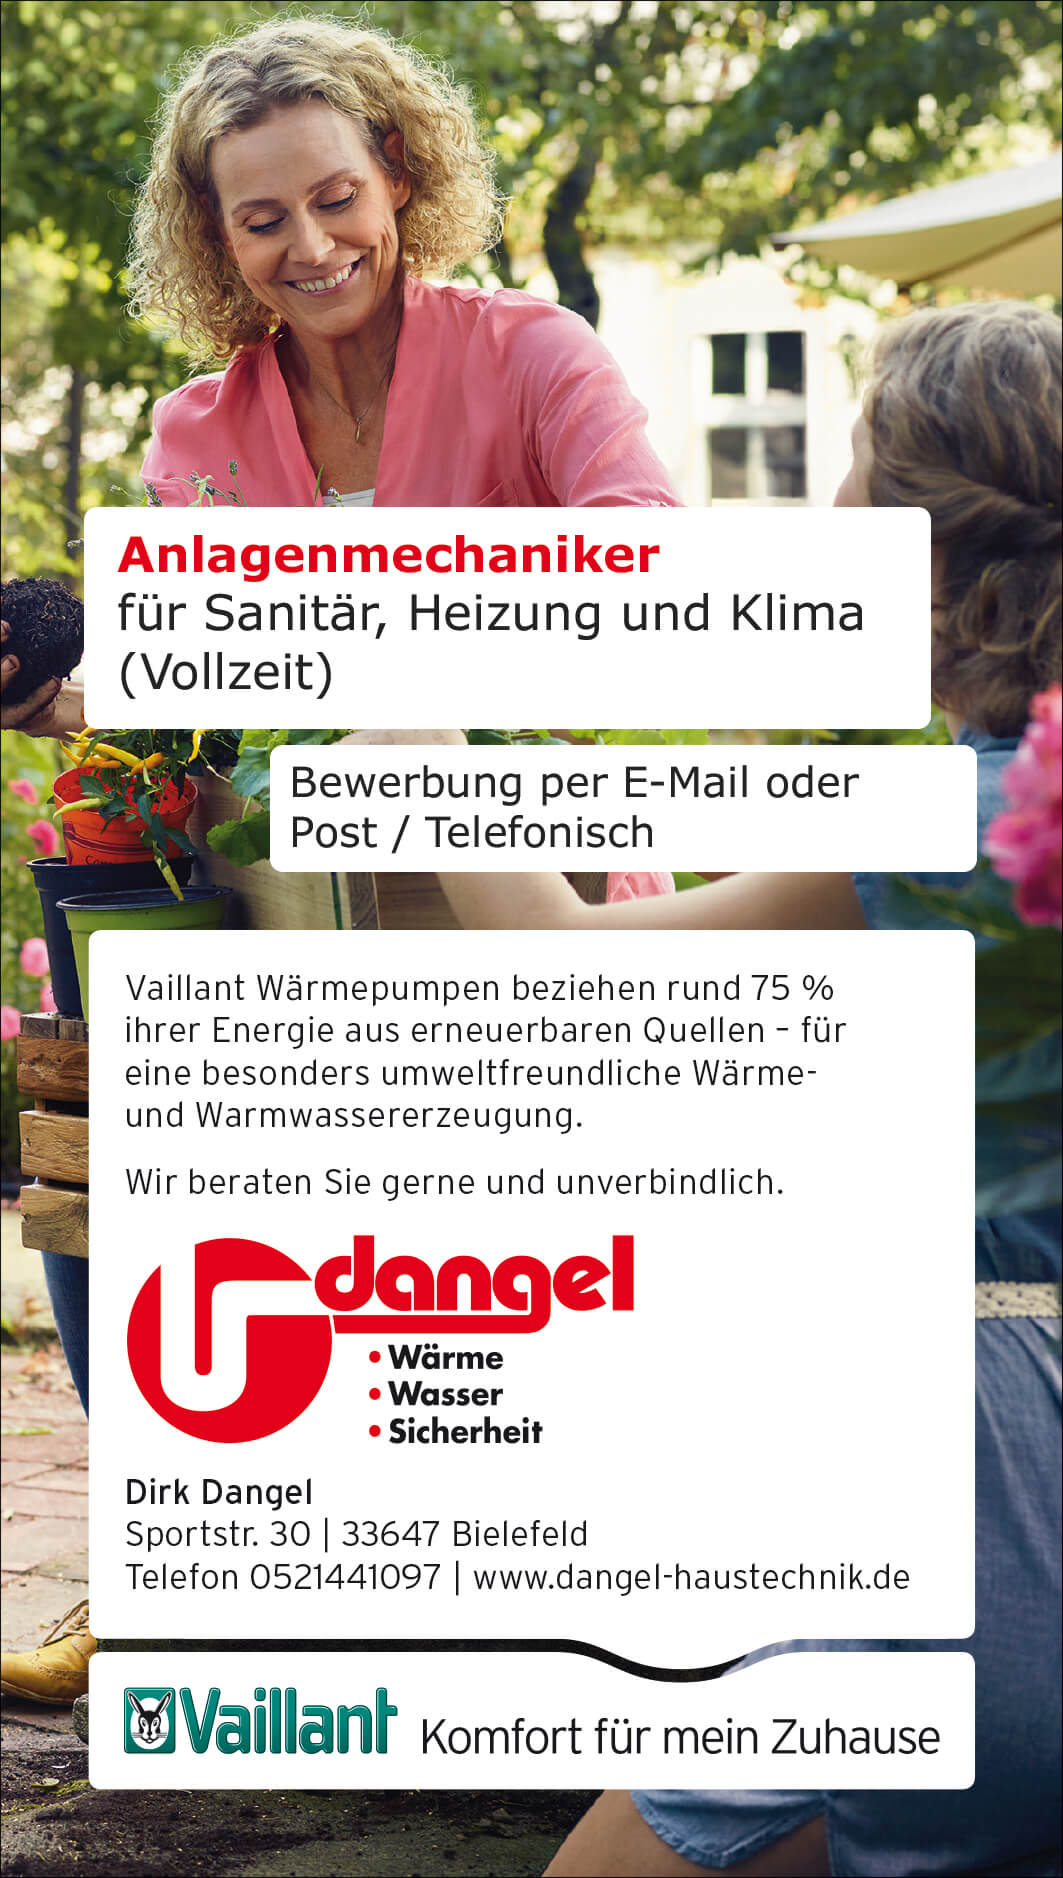 Dangel Sanitär- und Heizungsanlagen Bielefeld